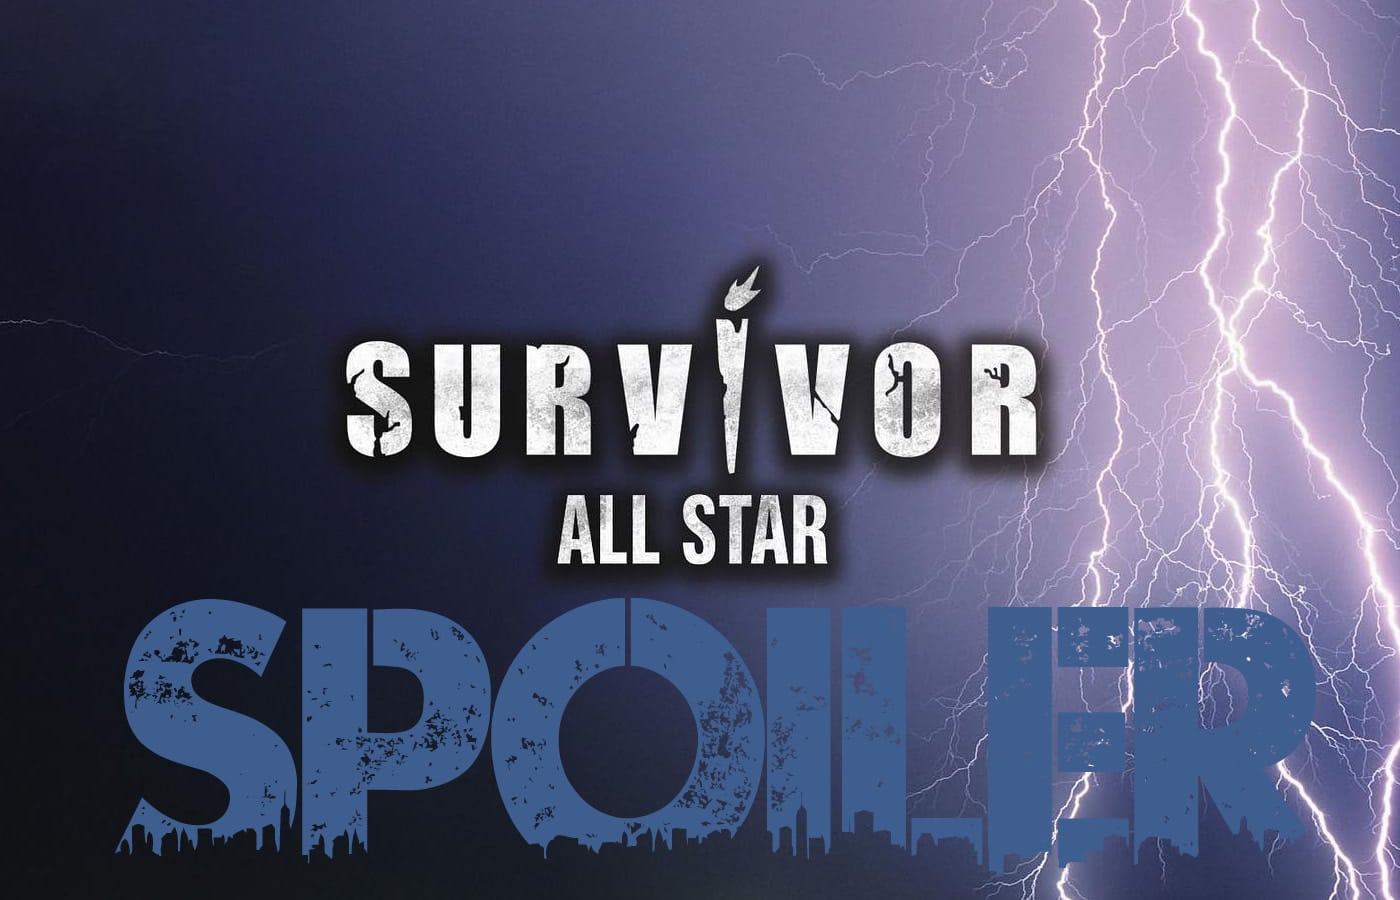 Survivor All Star spoiler